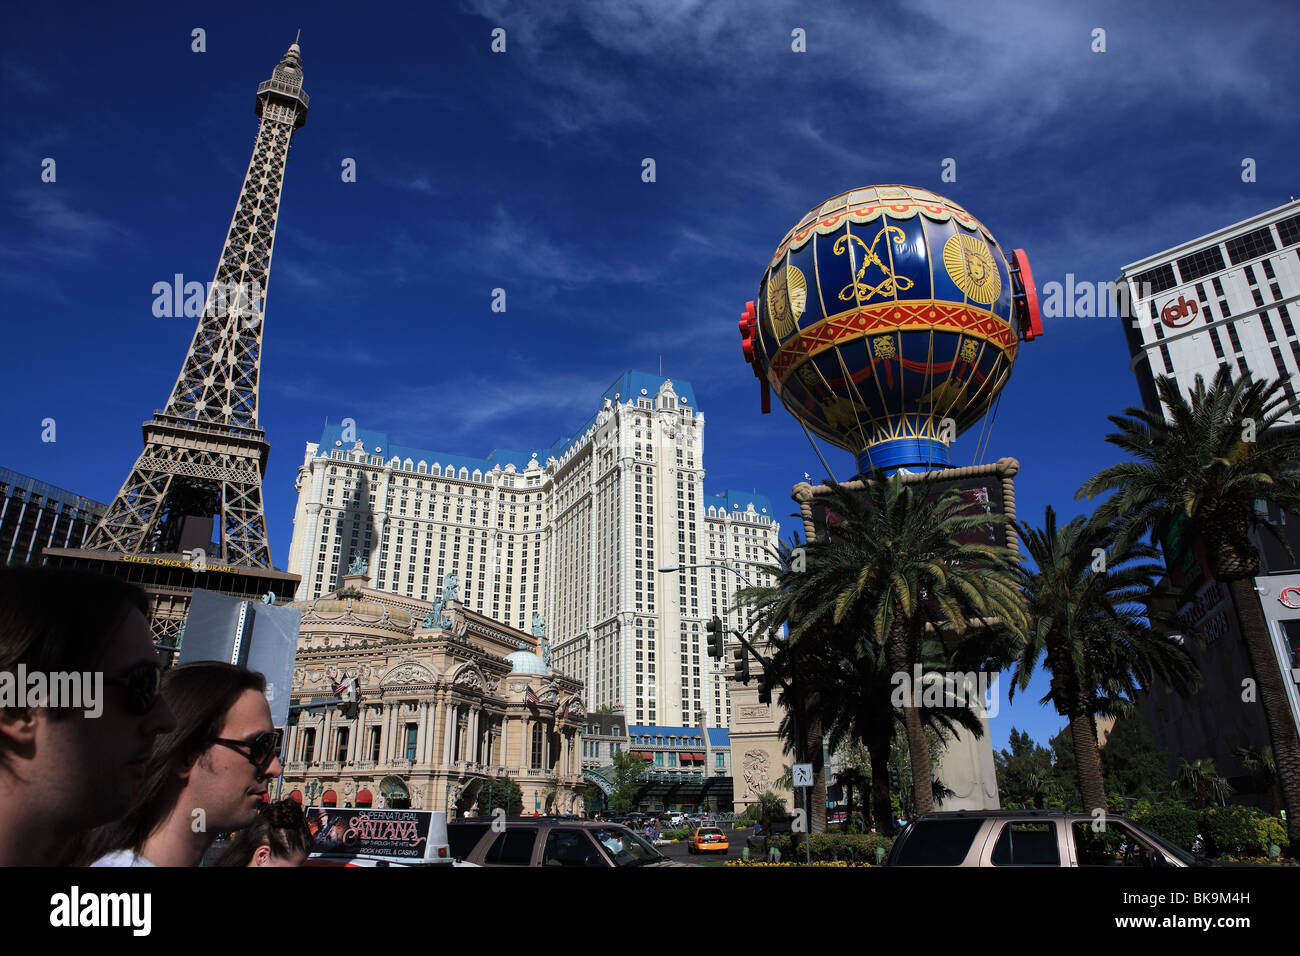 Paris Las Vegas Hotel & Casino situé sur le Strip de Las Vegas, Paradise, Nevada, USA Banque D'Images